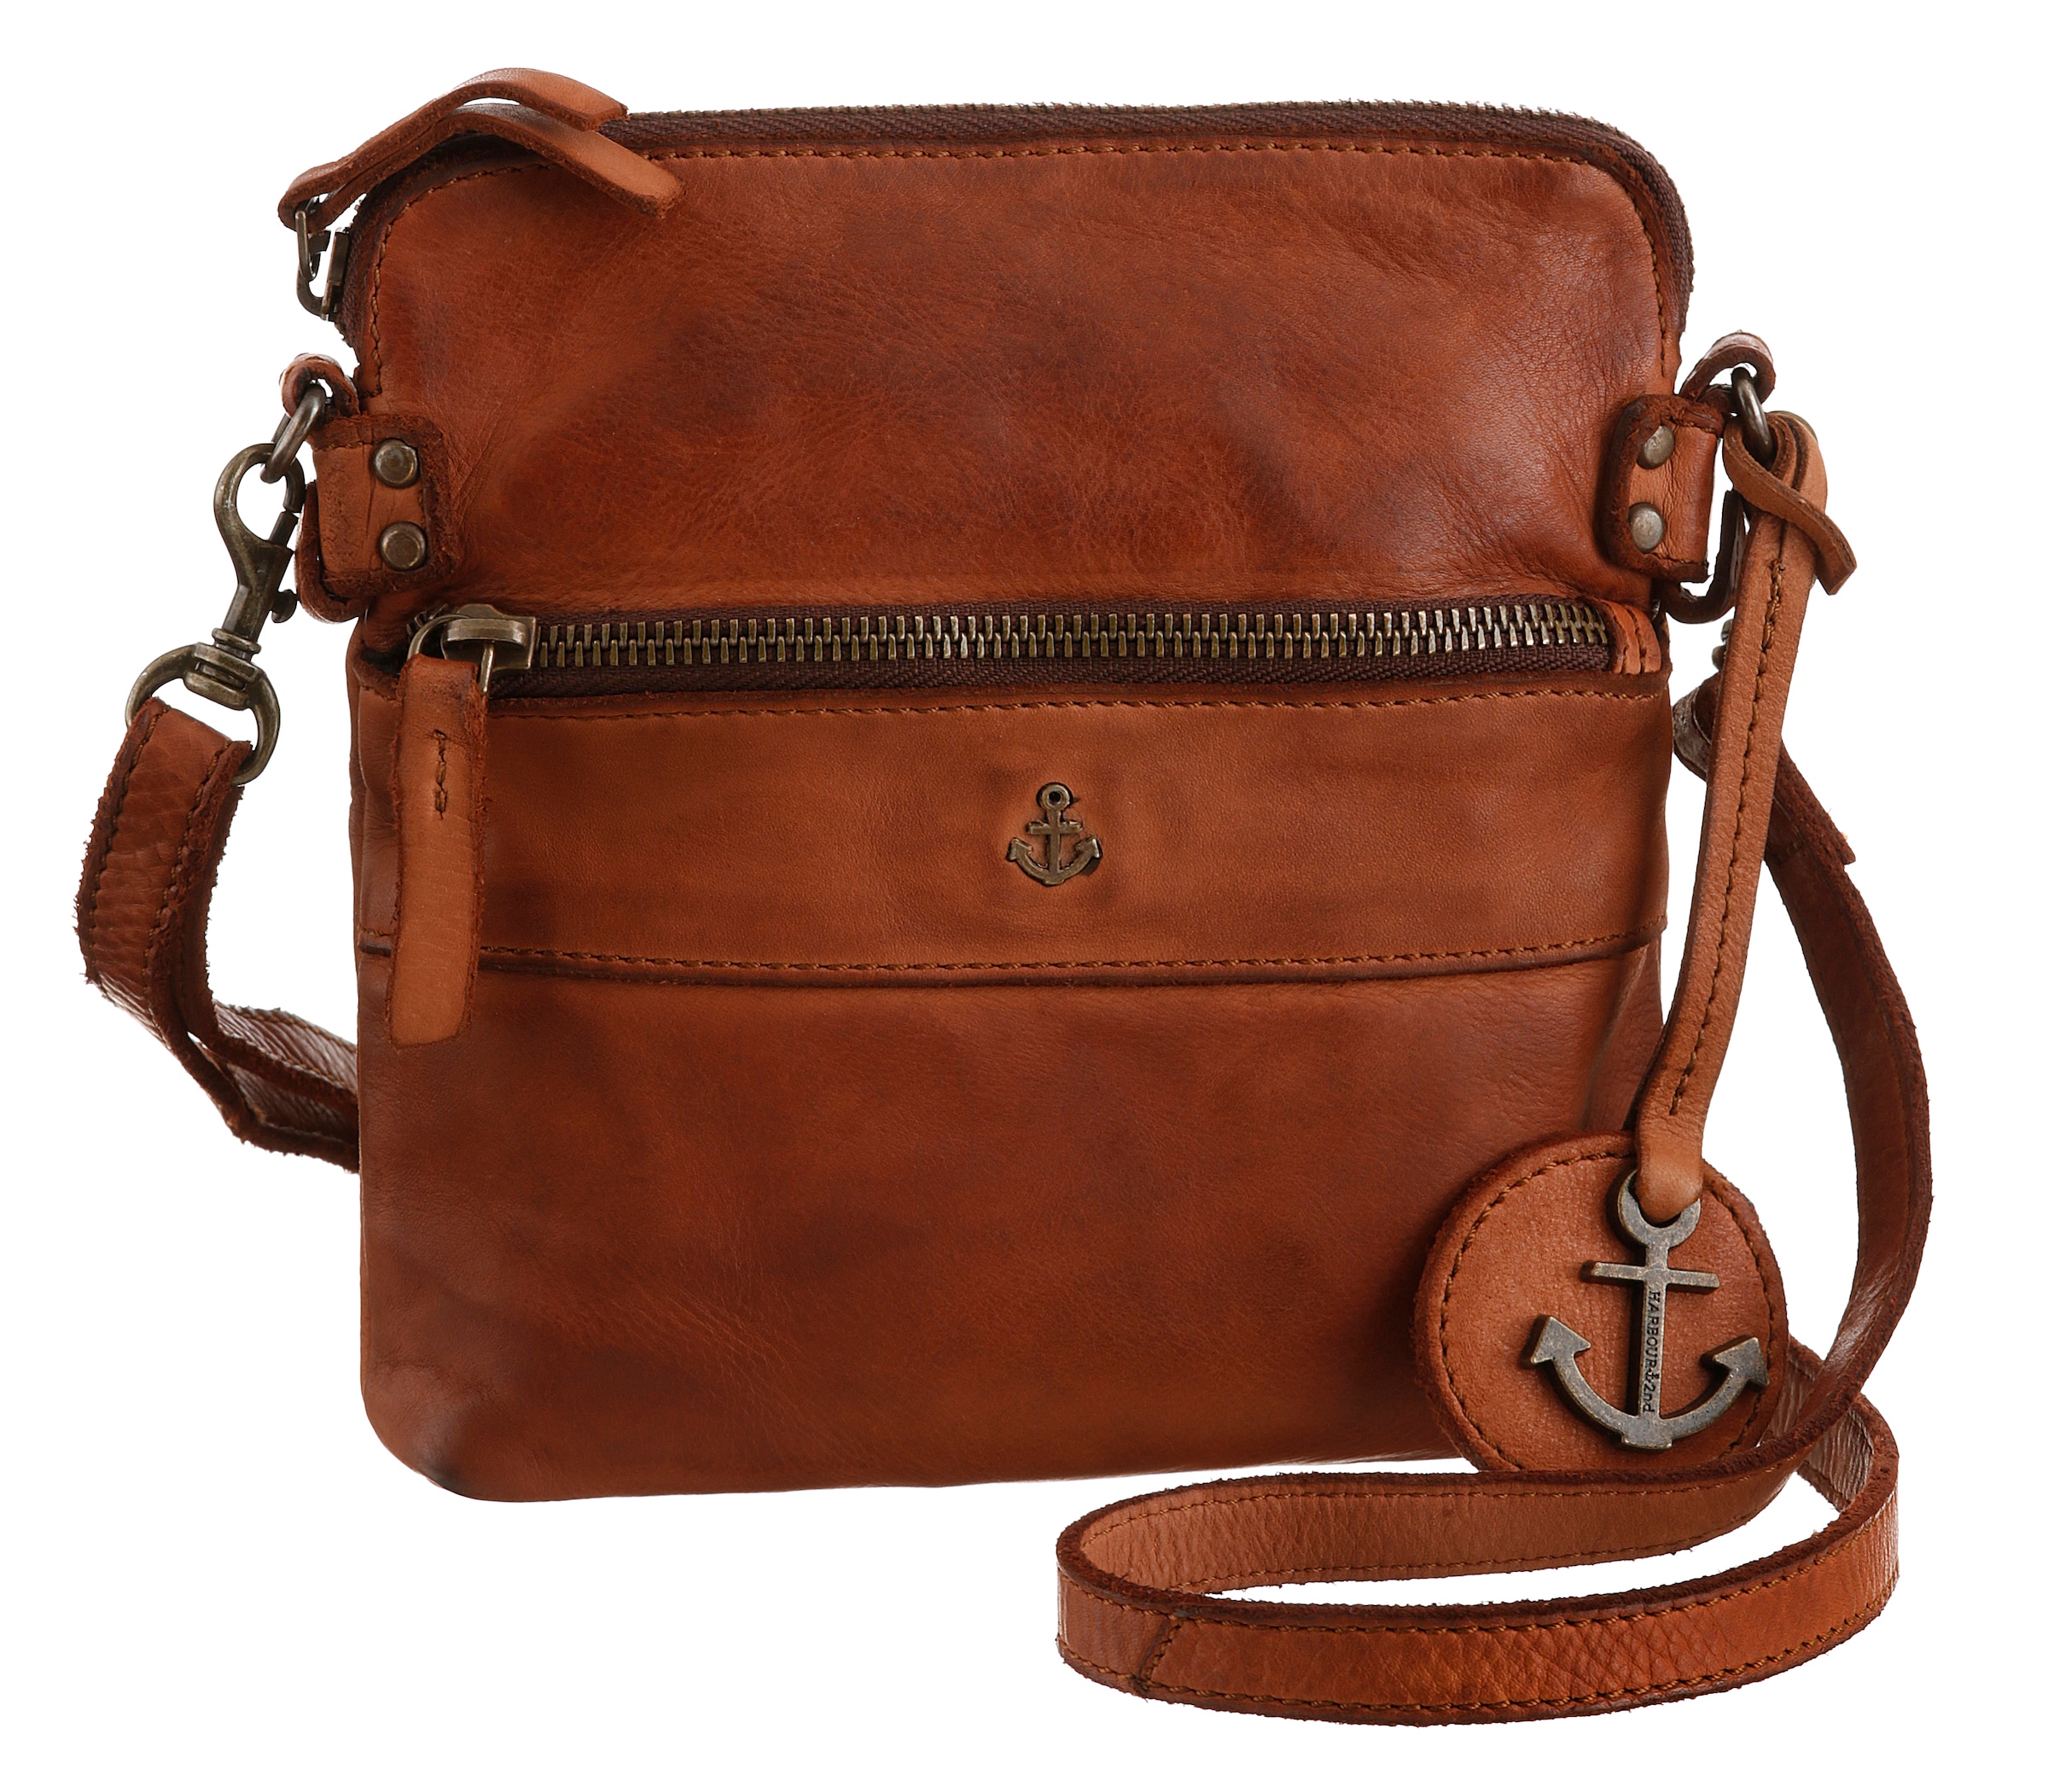 Handtasche »Crossbody Handtasche«, mit Reissverschlussfach und Logoanhänger